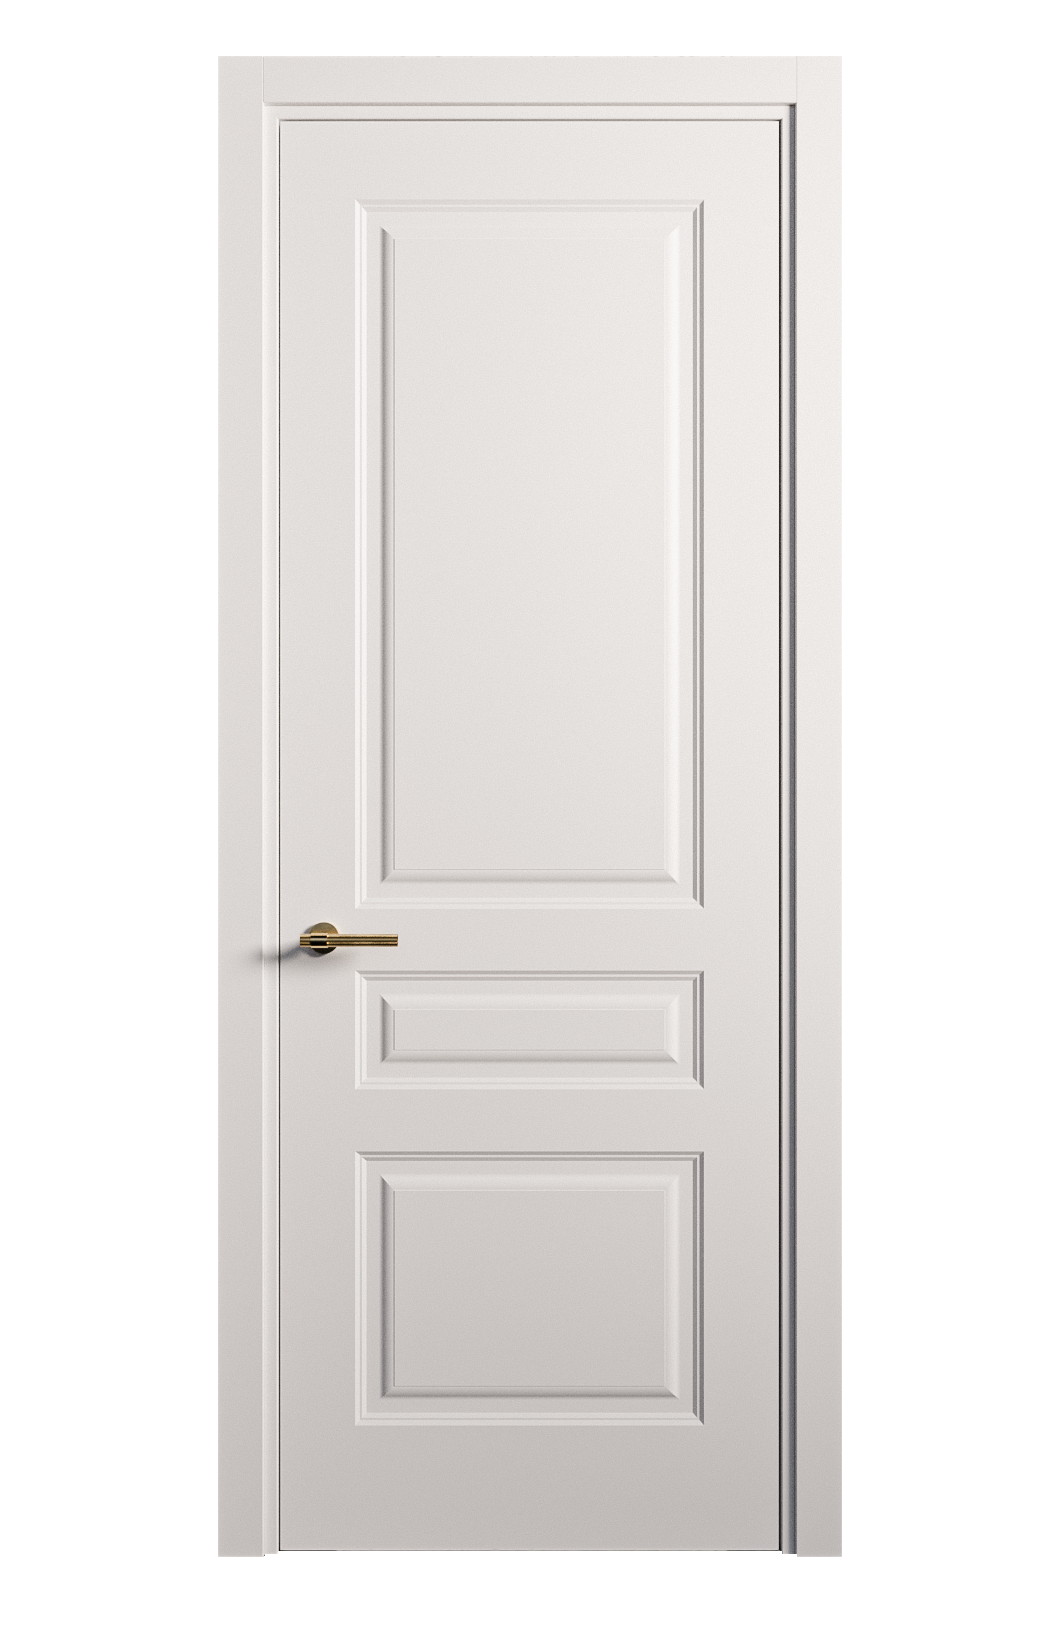 Межкомнатная дверь Вита-2 глухая эмаль ral 9003 26366